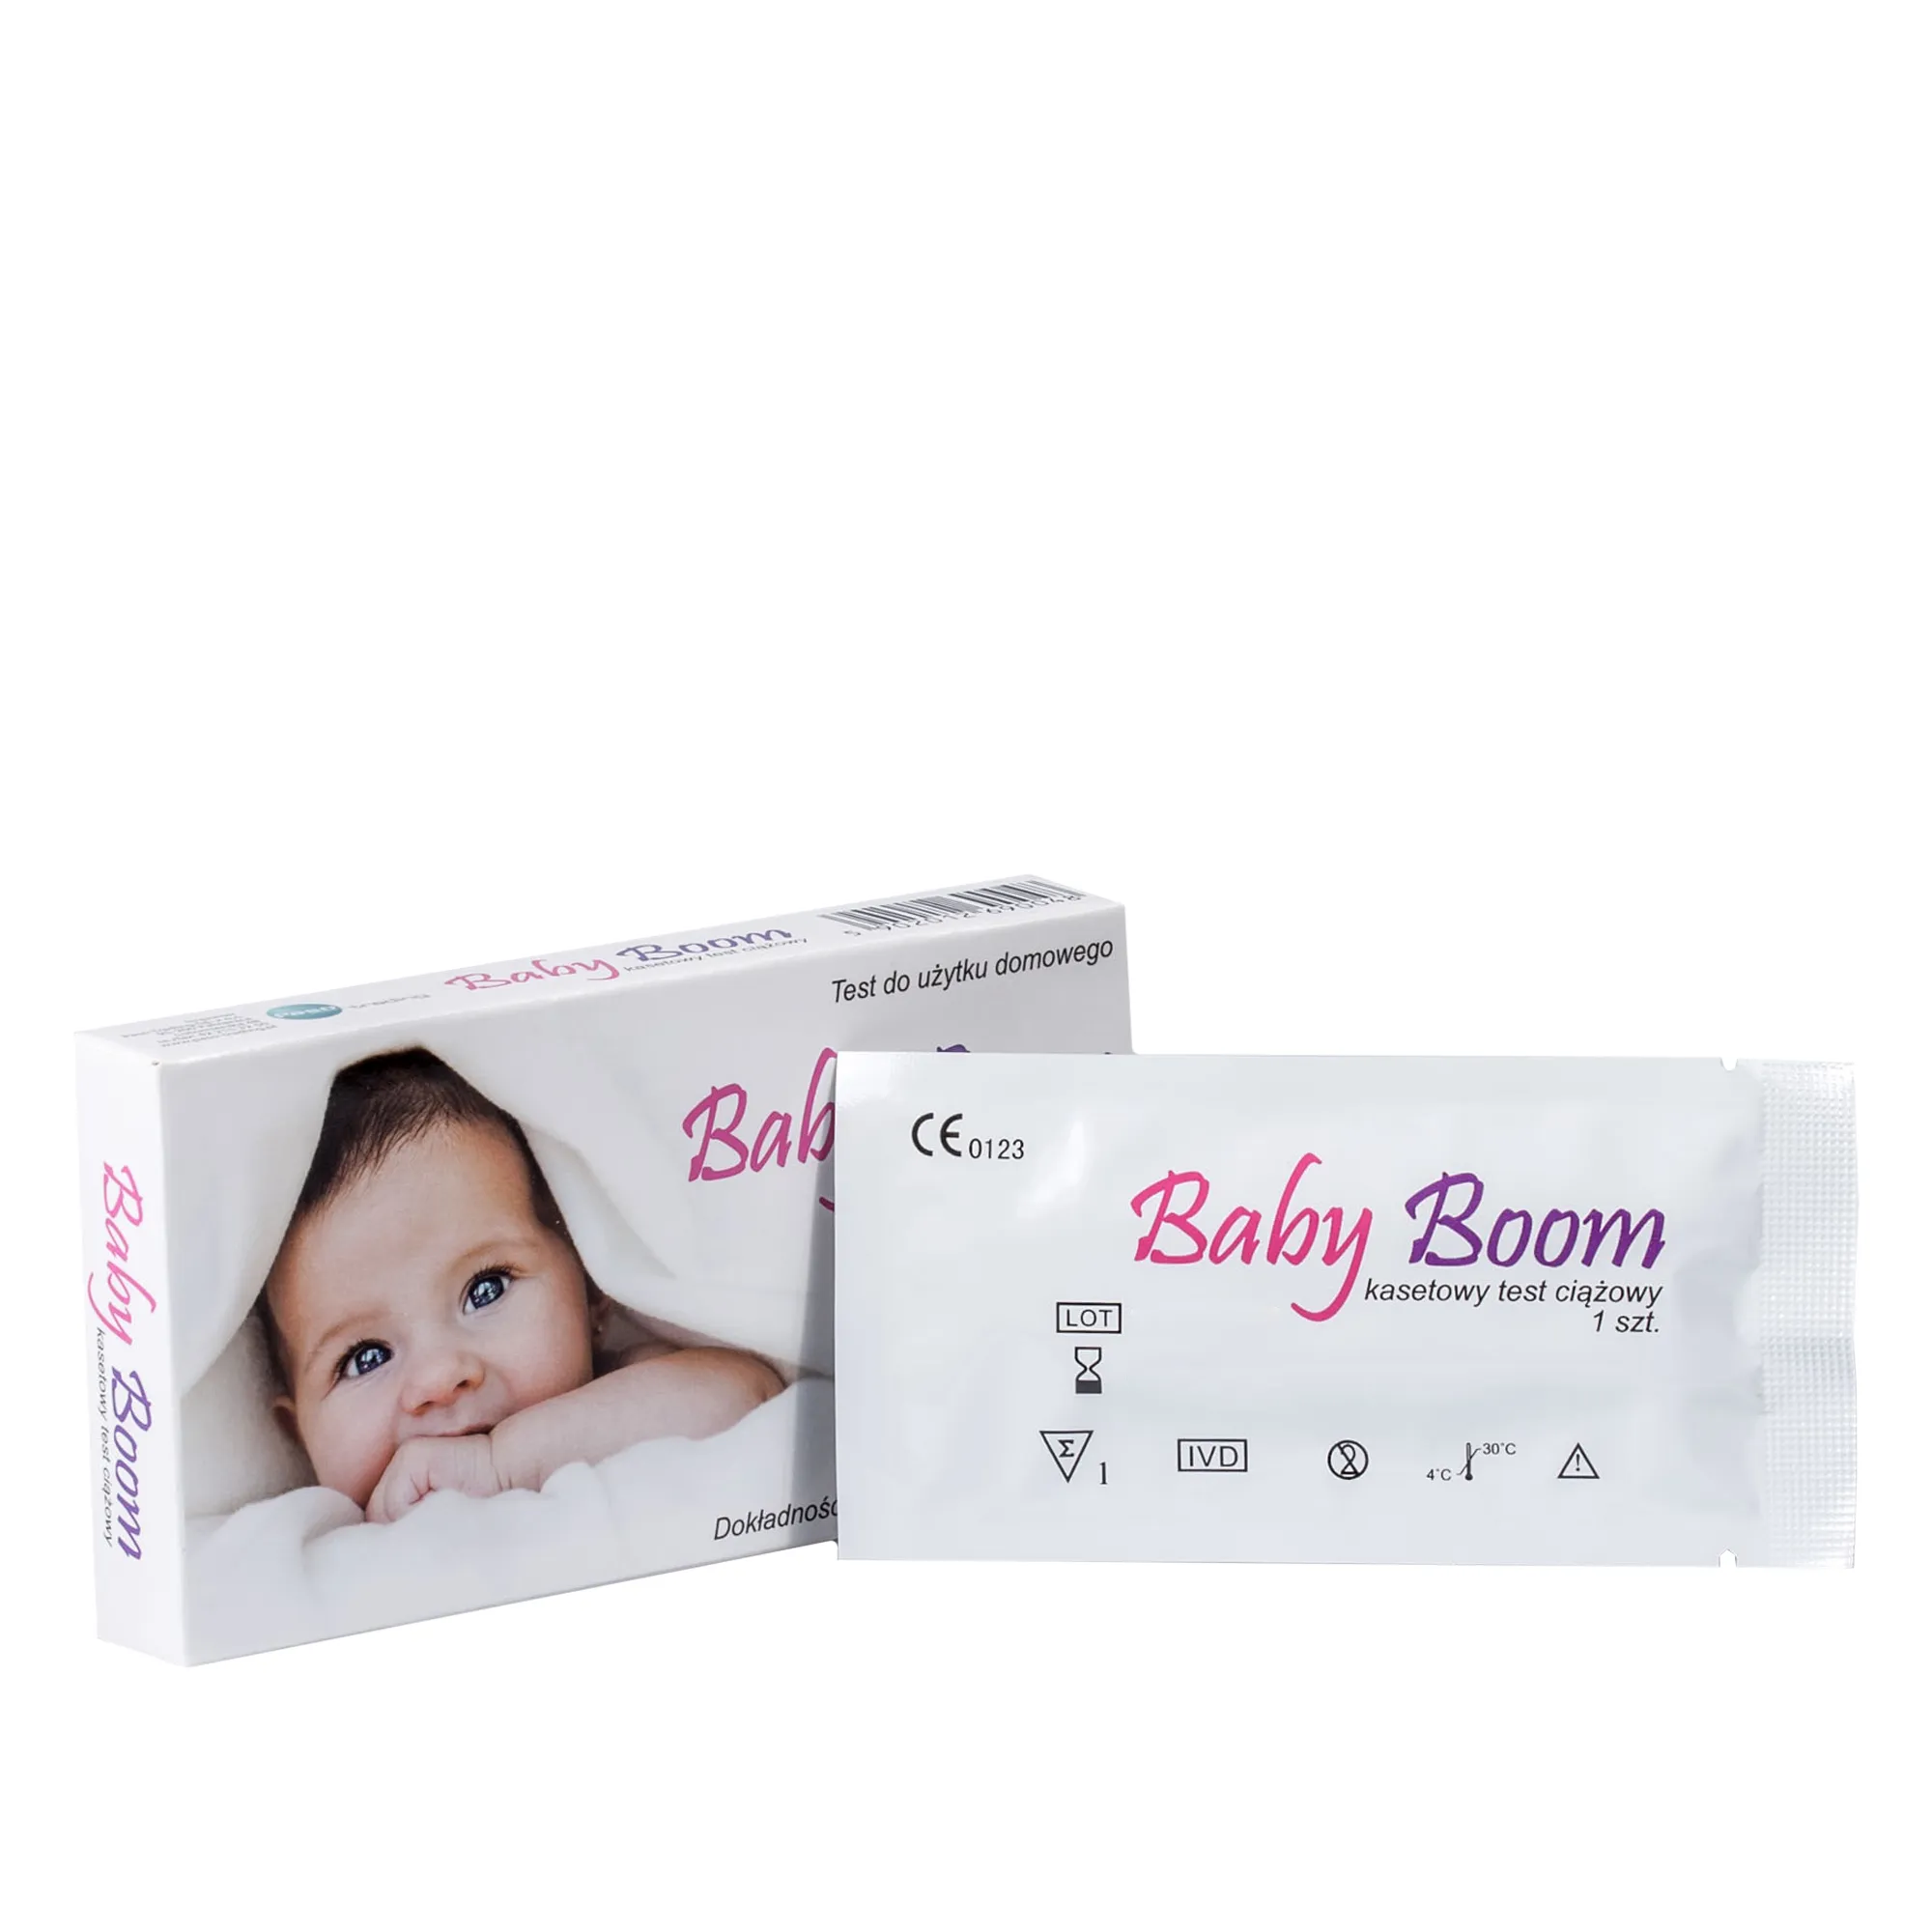 Baby Boom test ciążowy kasetowy, 1 szt. 